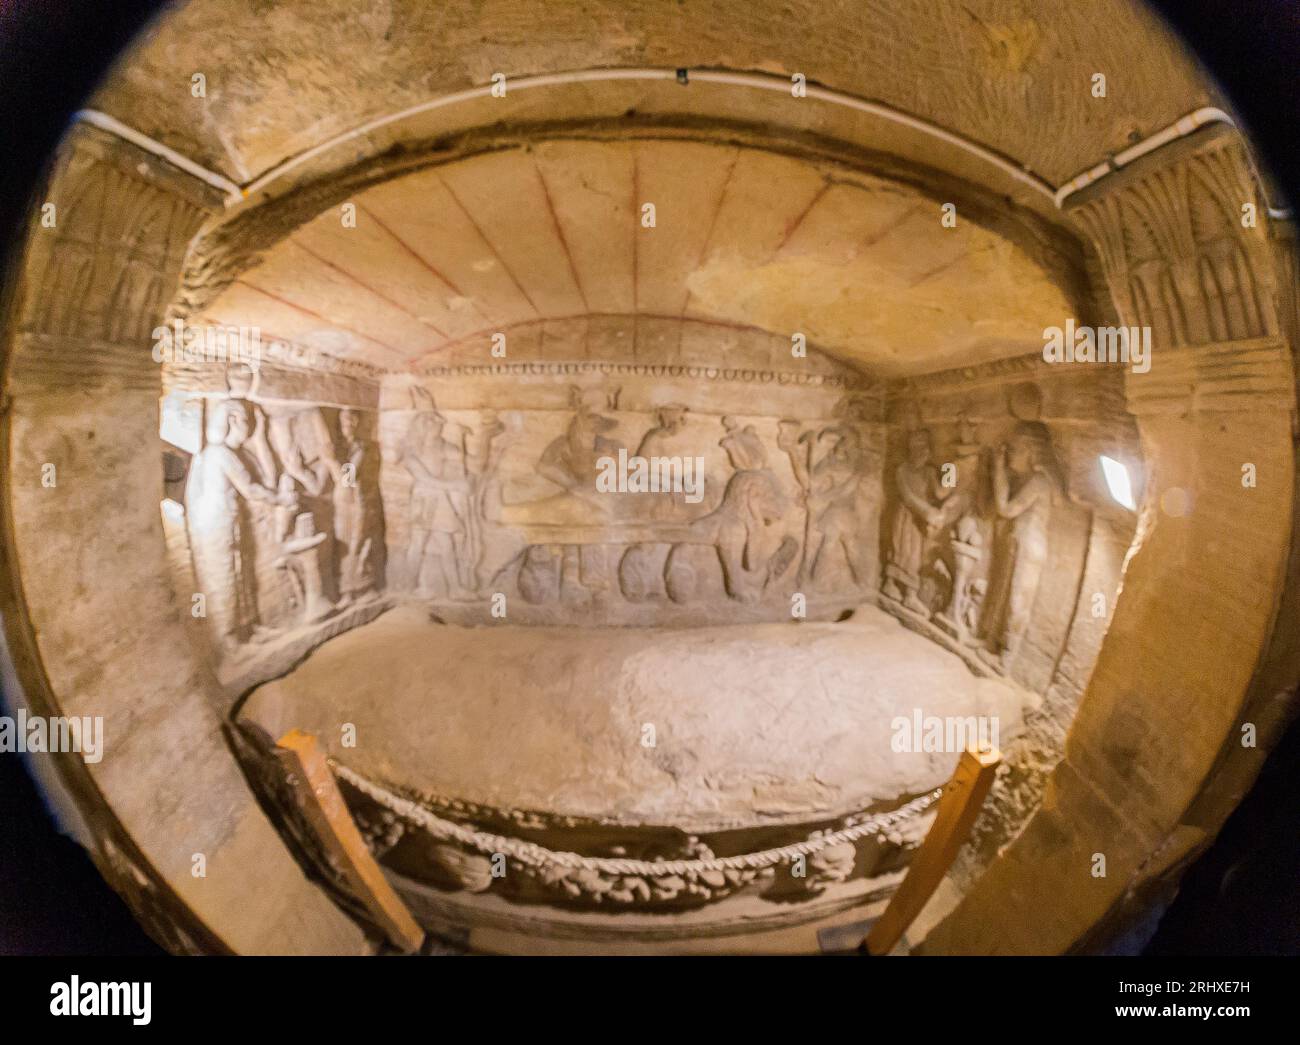 Necropoli di Kom el Shogafa, tomba principale, sala principale, nicchia centrale, vista generale, obiettivo fisheye : Sarcofago, 3 pareti con 3 scene ciascuna. Foto Stock